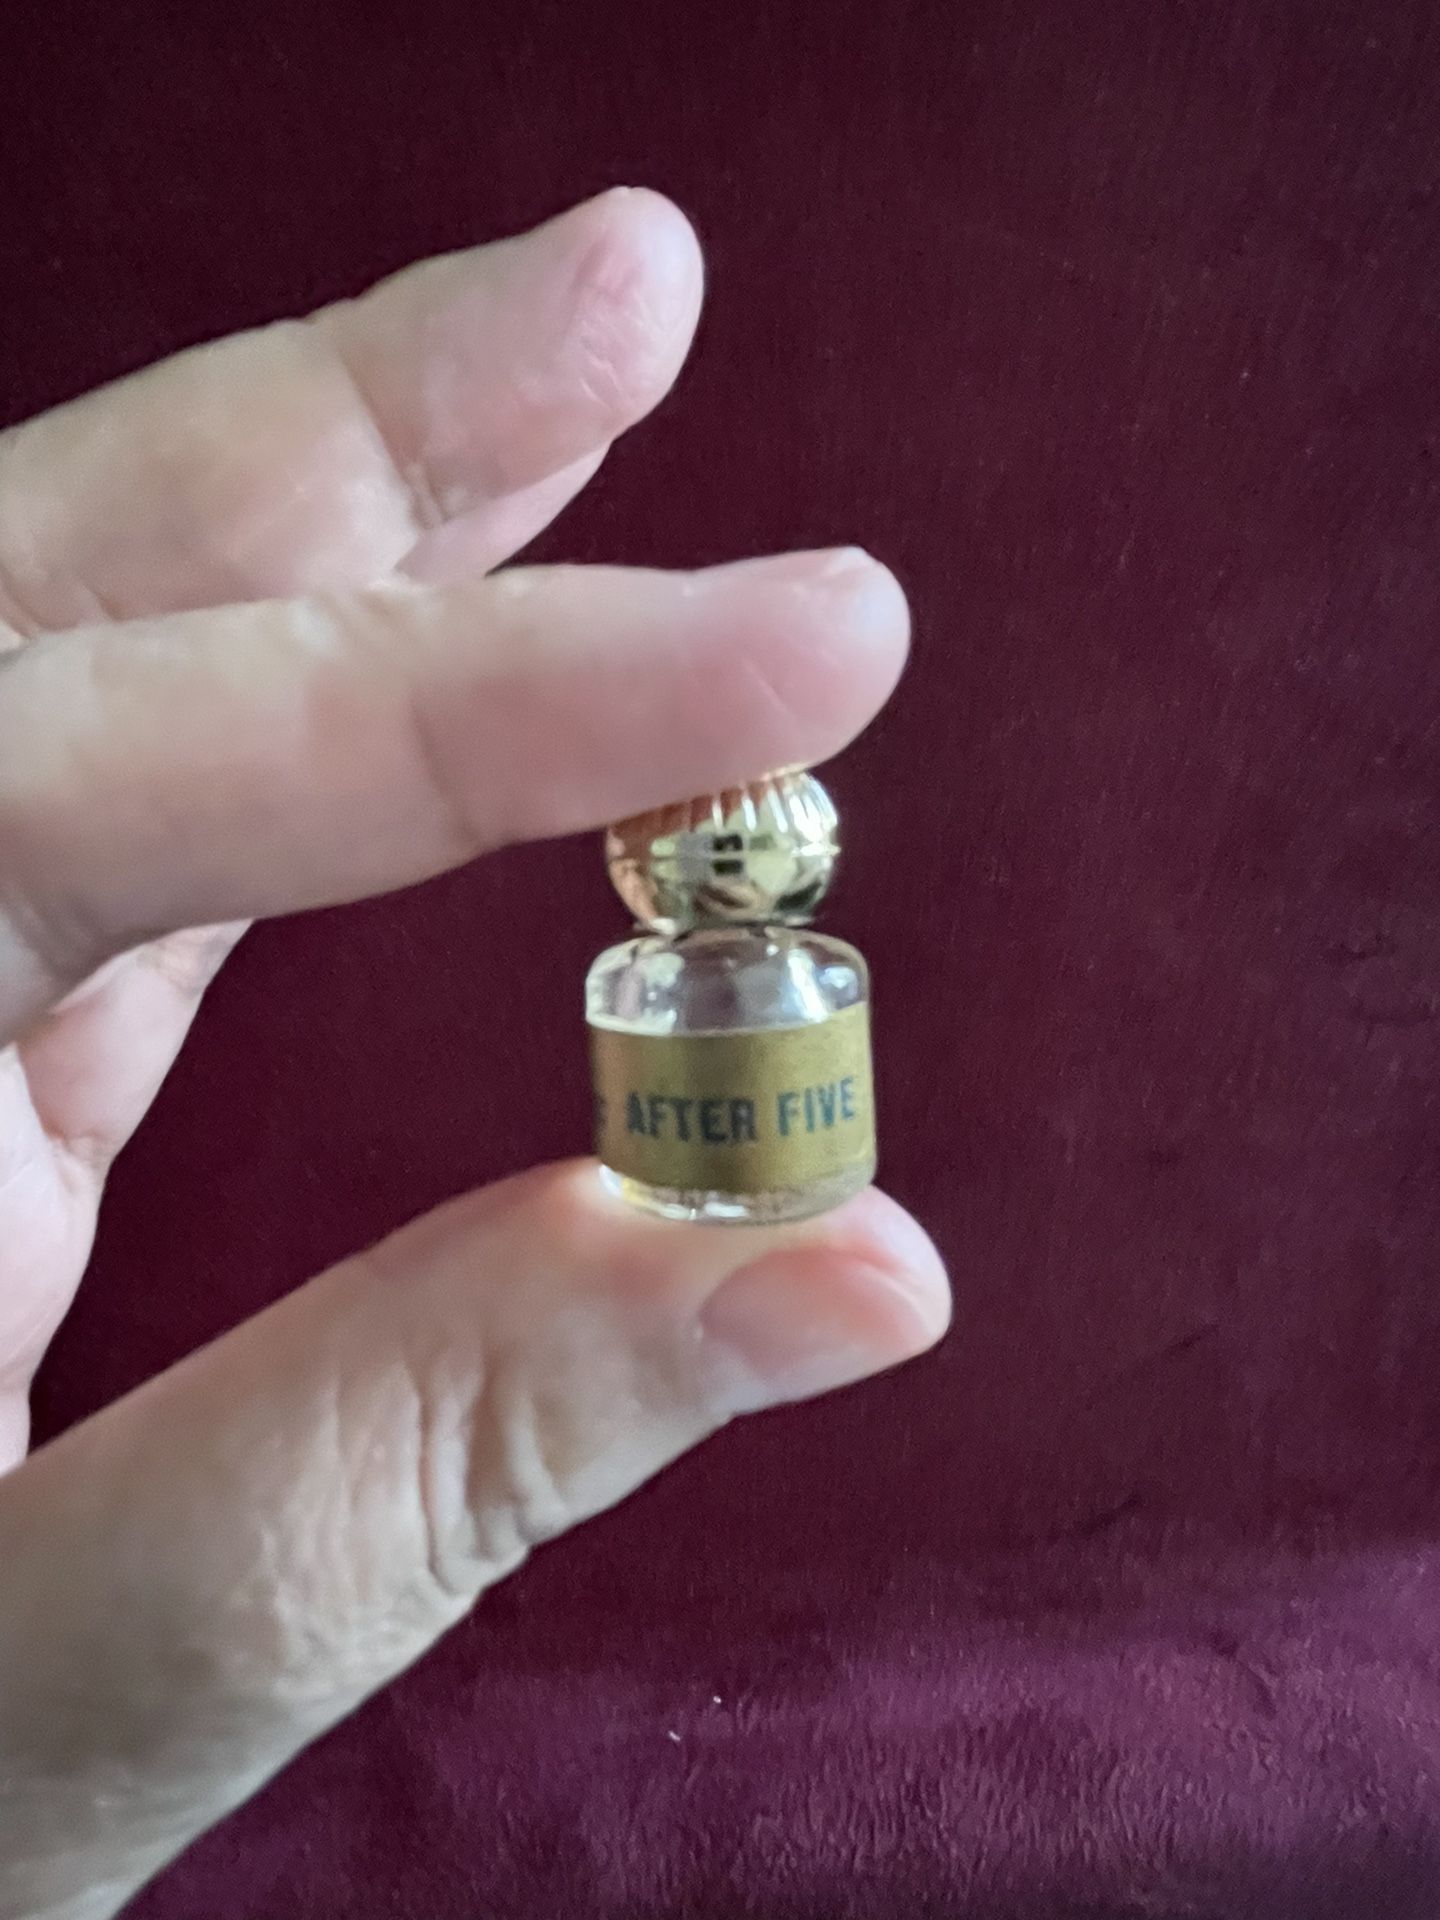 Vintage Antique AUVERGNE AFTER FIVE Perfume Miniature Perfume Bottle 1 Inch RARE 